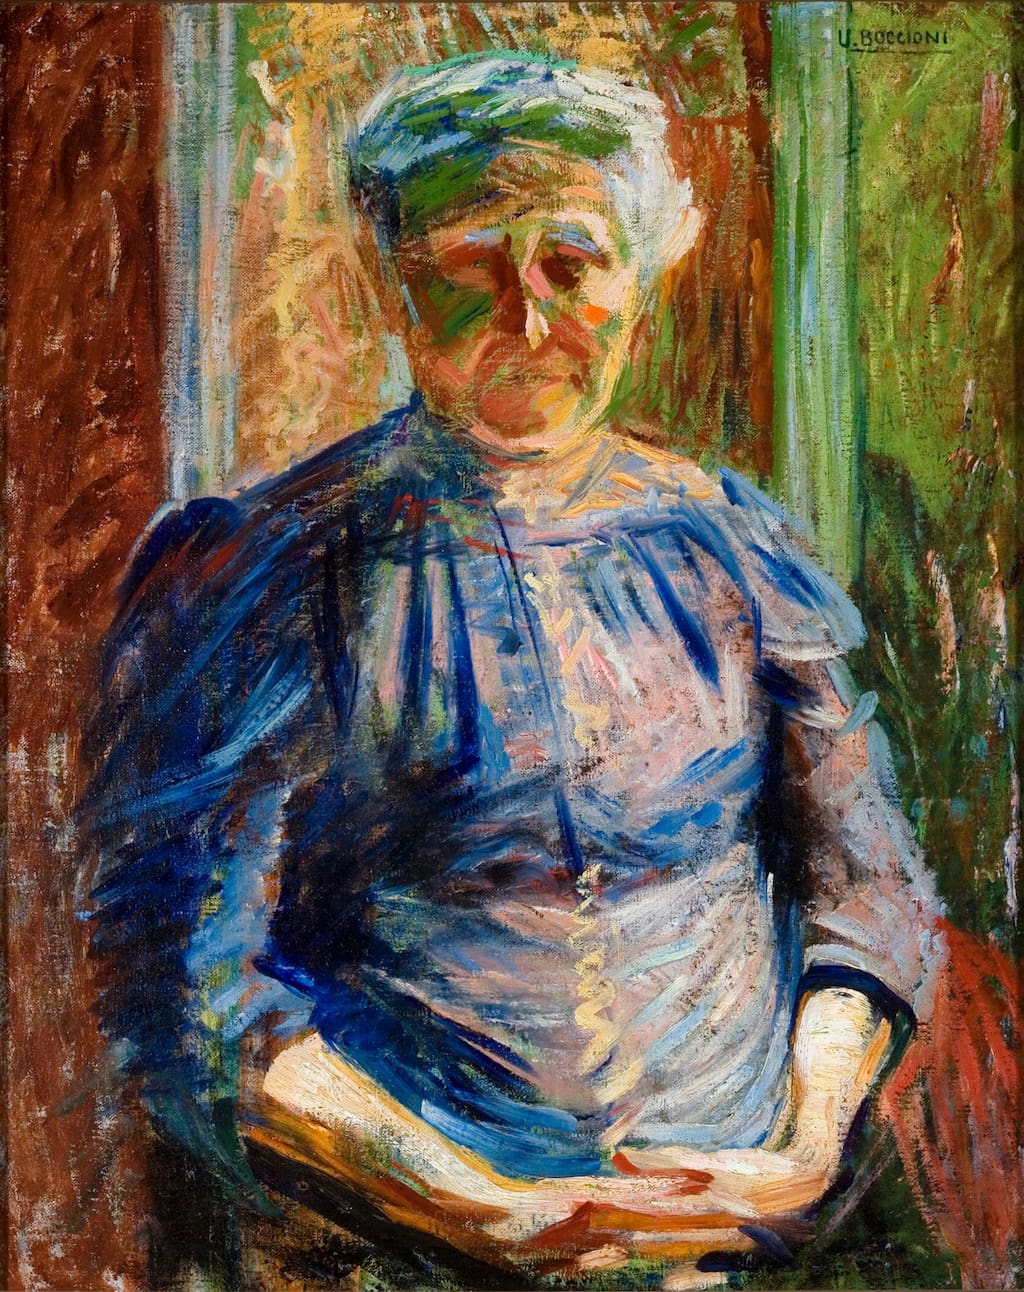 Umberto Boccioni: La madre, 1912 Olio su tela, 52 x 35 cm Piacenza, Galleria d’arte moderna Ricci Oddi